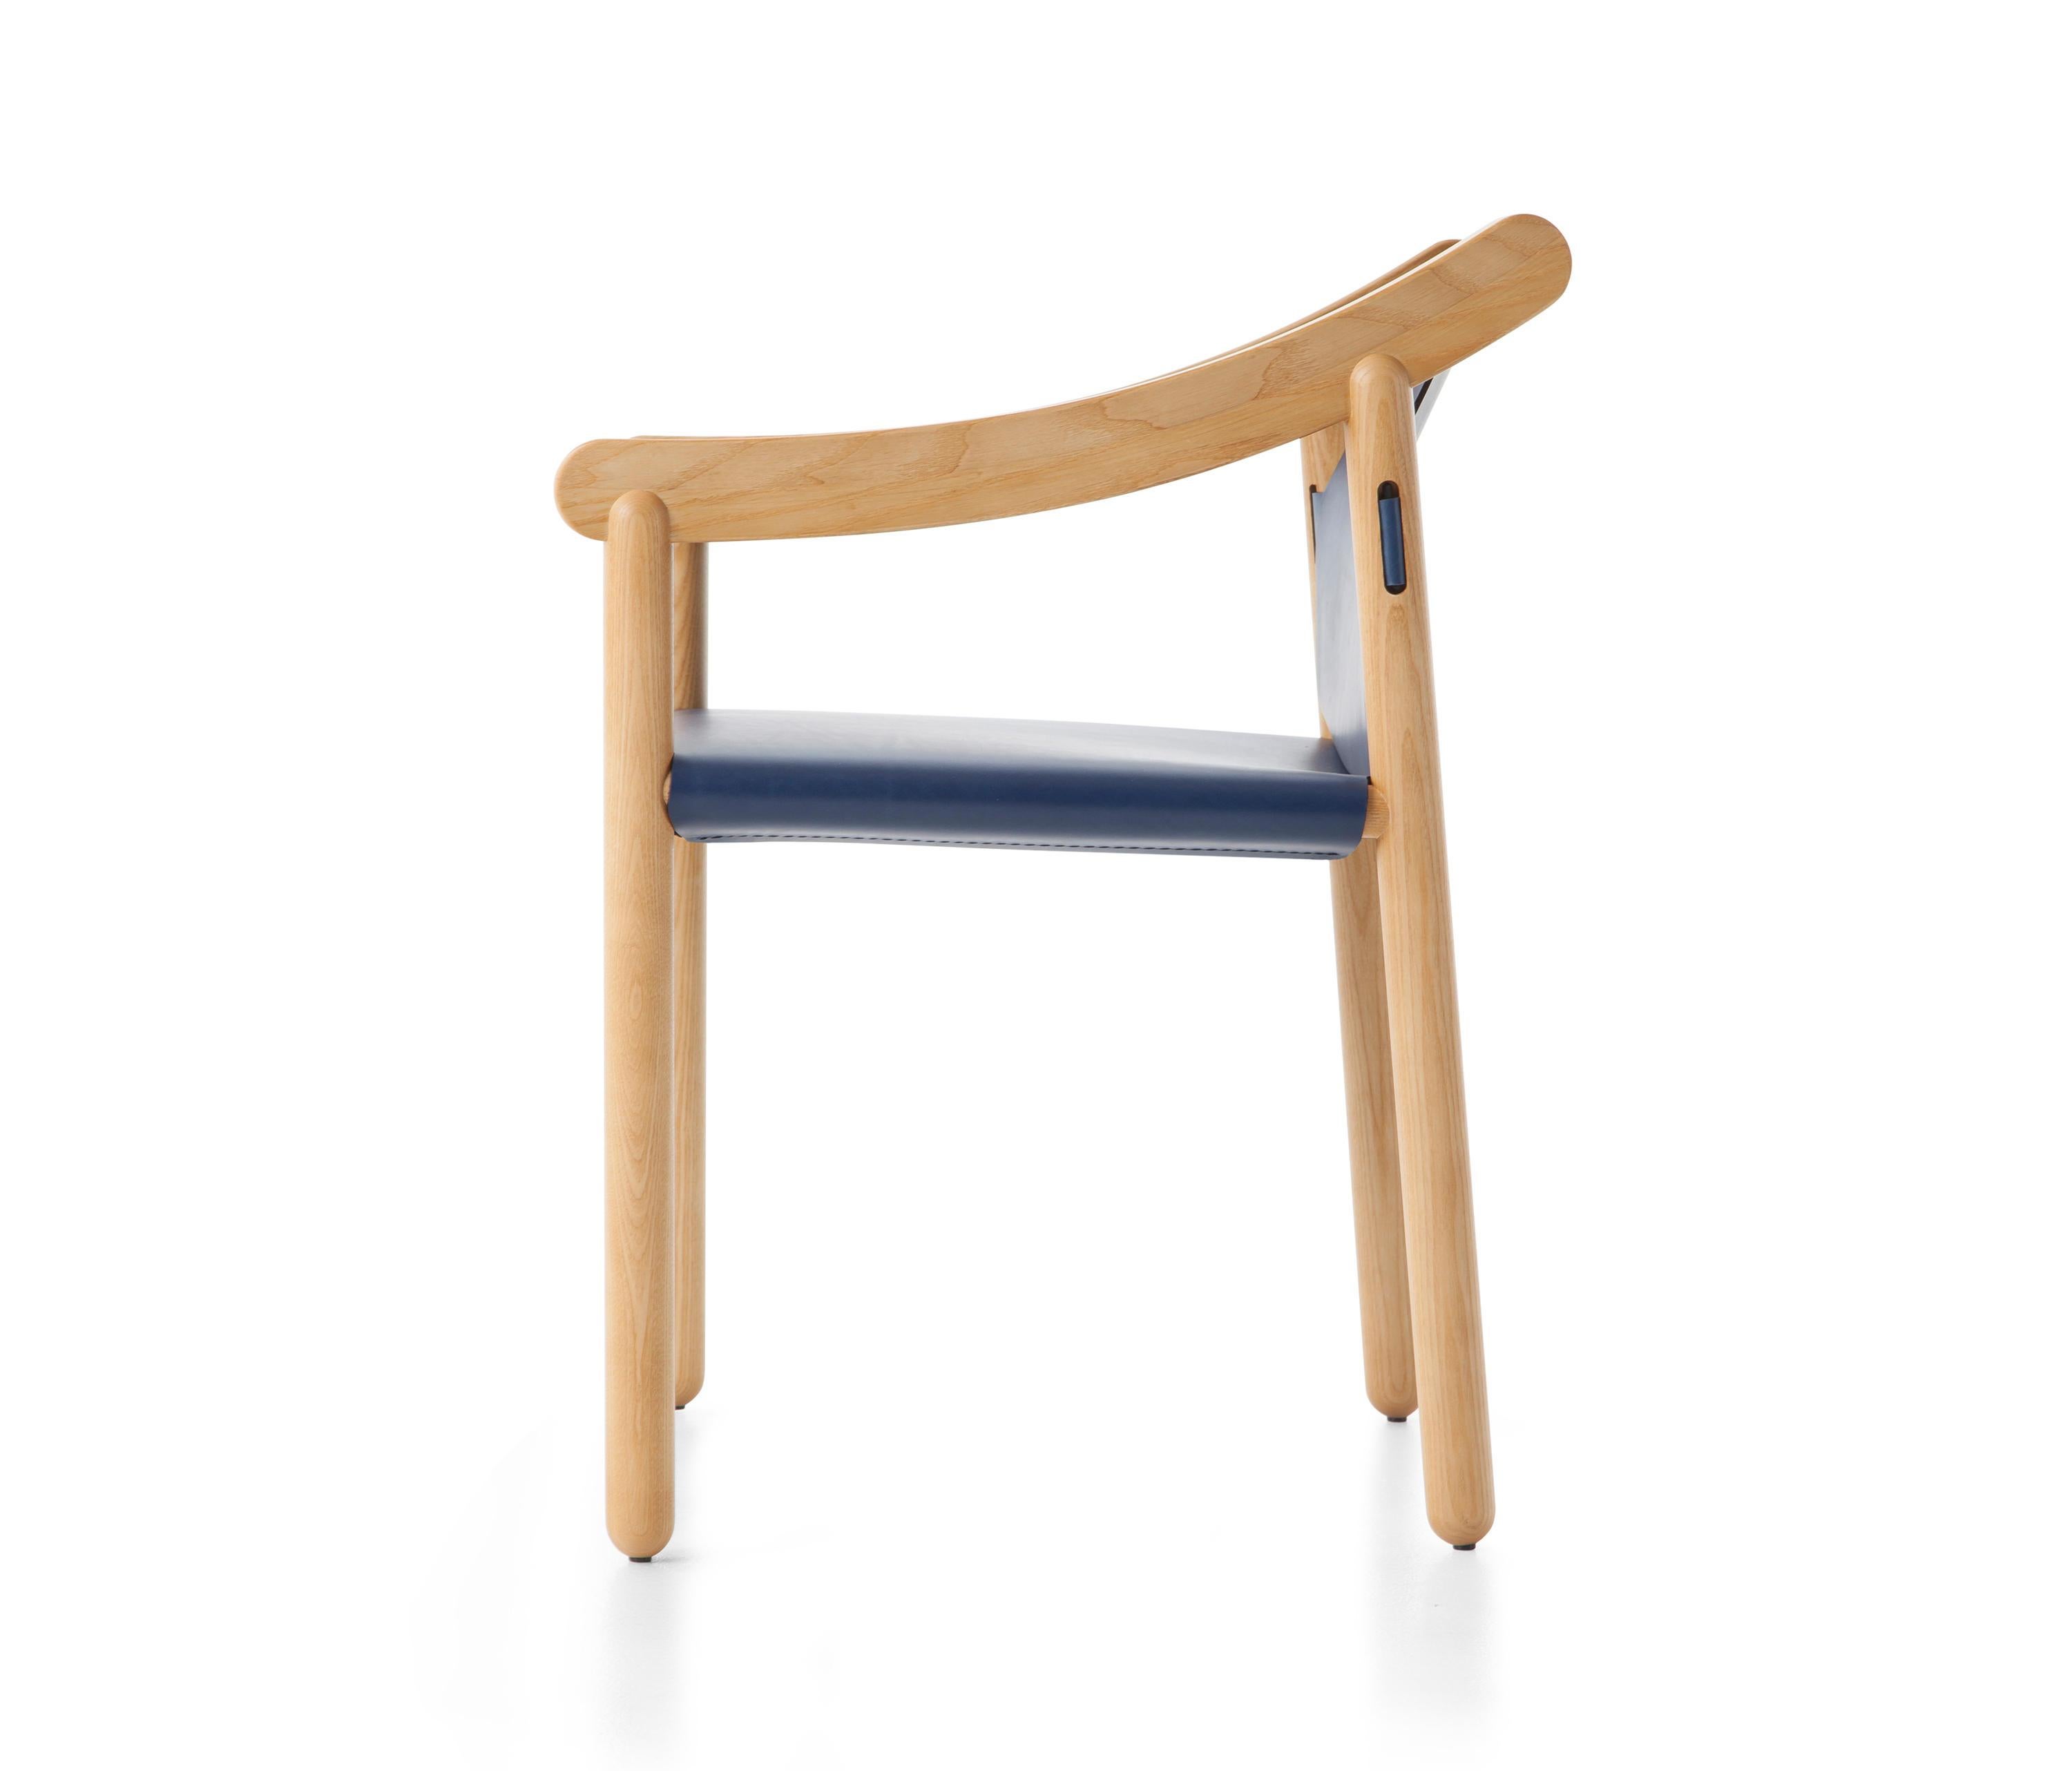 Fauteuil modèle 905 conçu par Vico Magistretti en 1964.
Fabriqué par Cassina en Italie.

Une chaise moderne avec un héritage culturel, expression du génie créatif de Vico Magistretti qui l'a conçue en 1964. 905 est une chaise élégante faite de